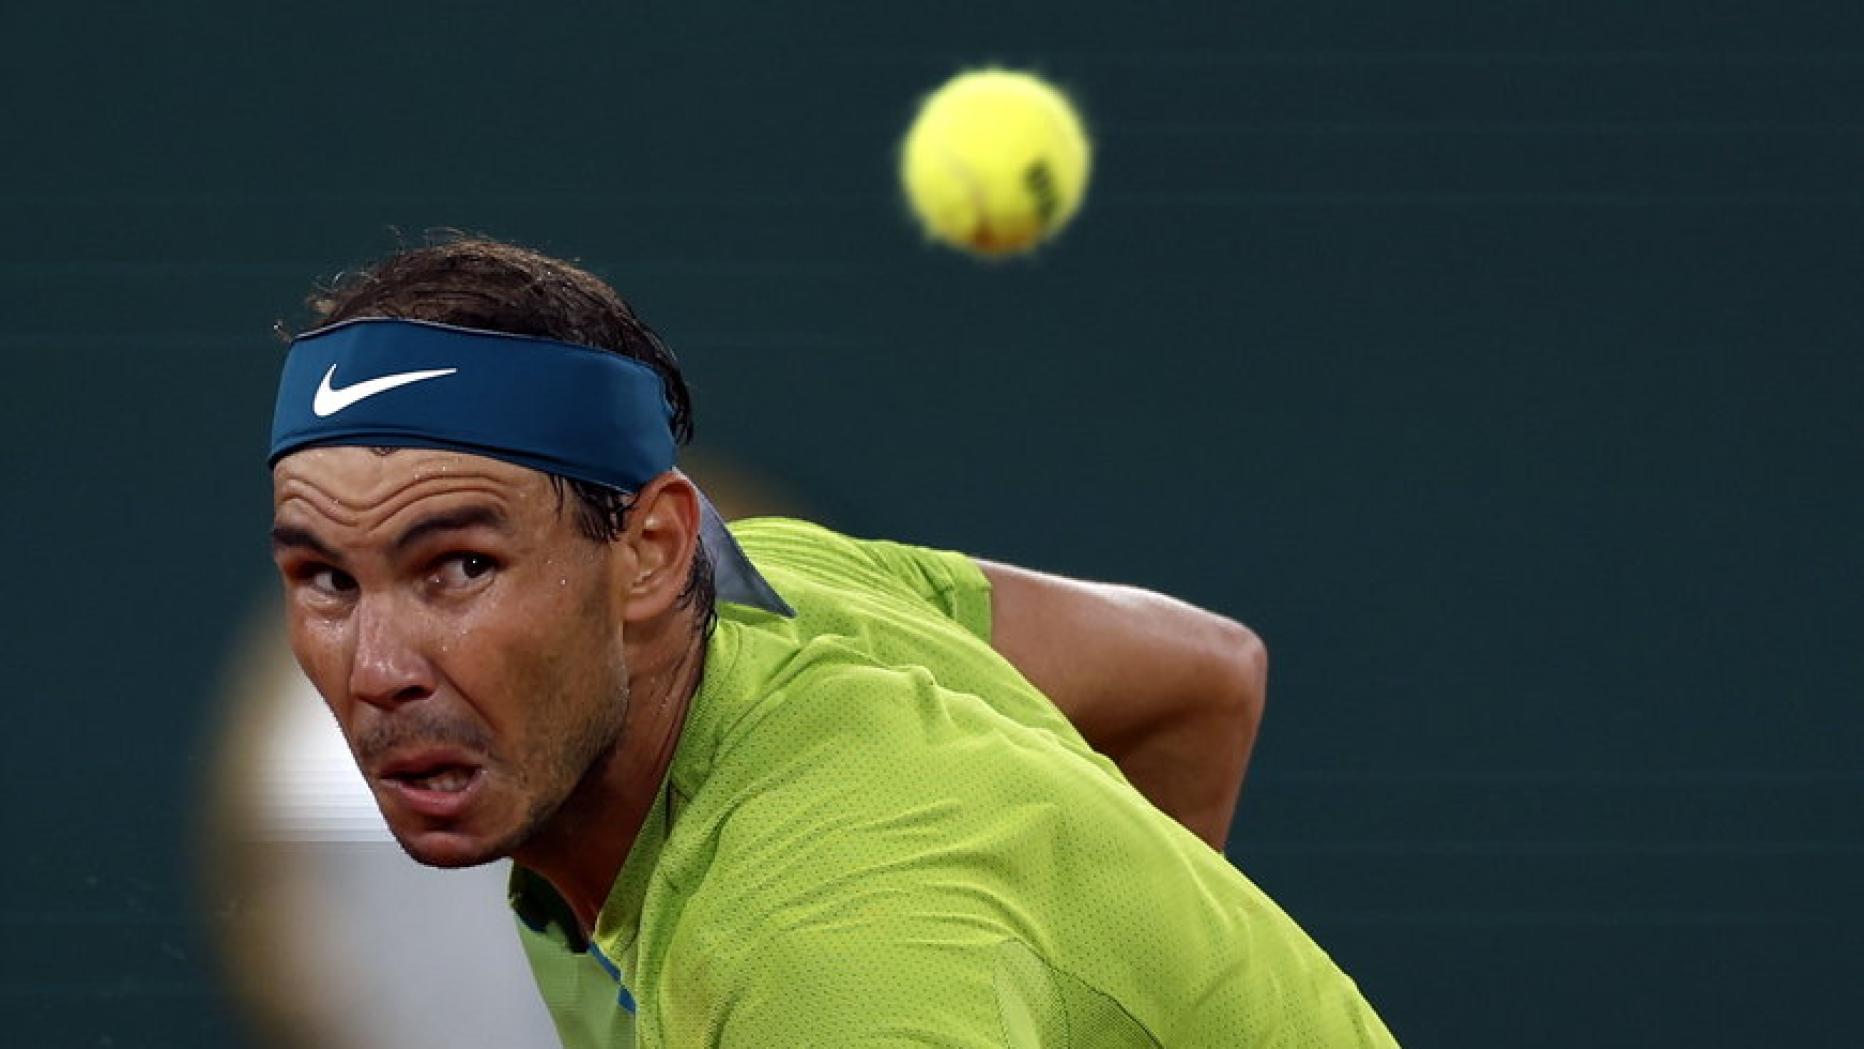 French-Open-Finale Rafael Nadal und der unbekannte